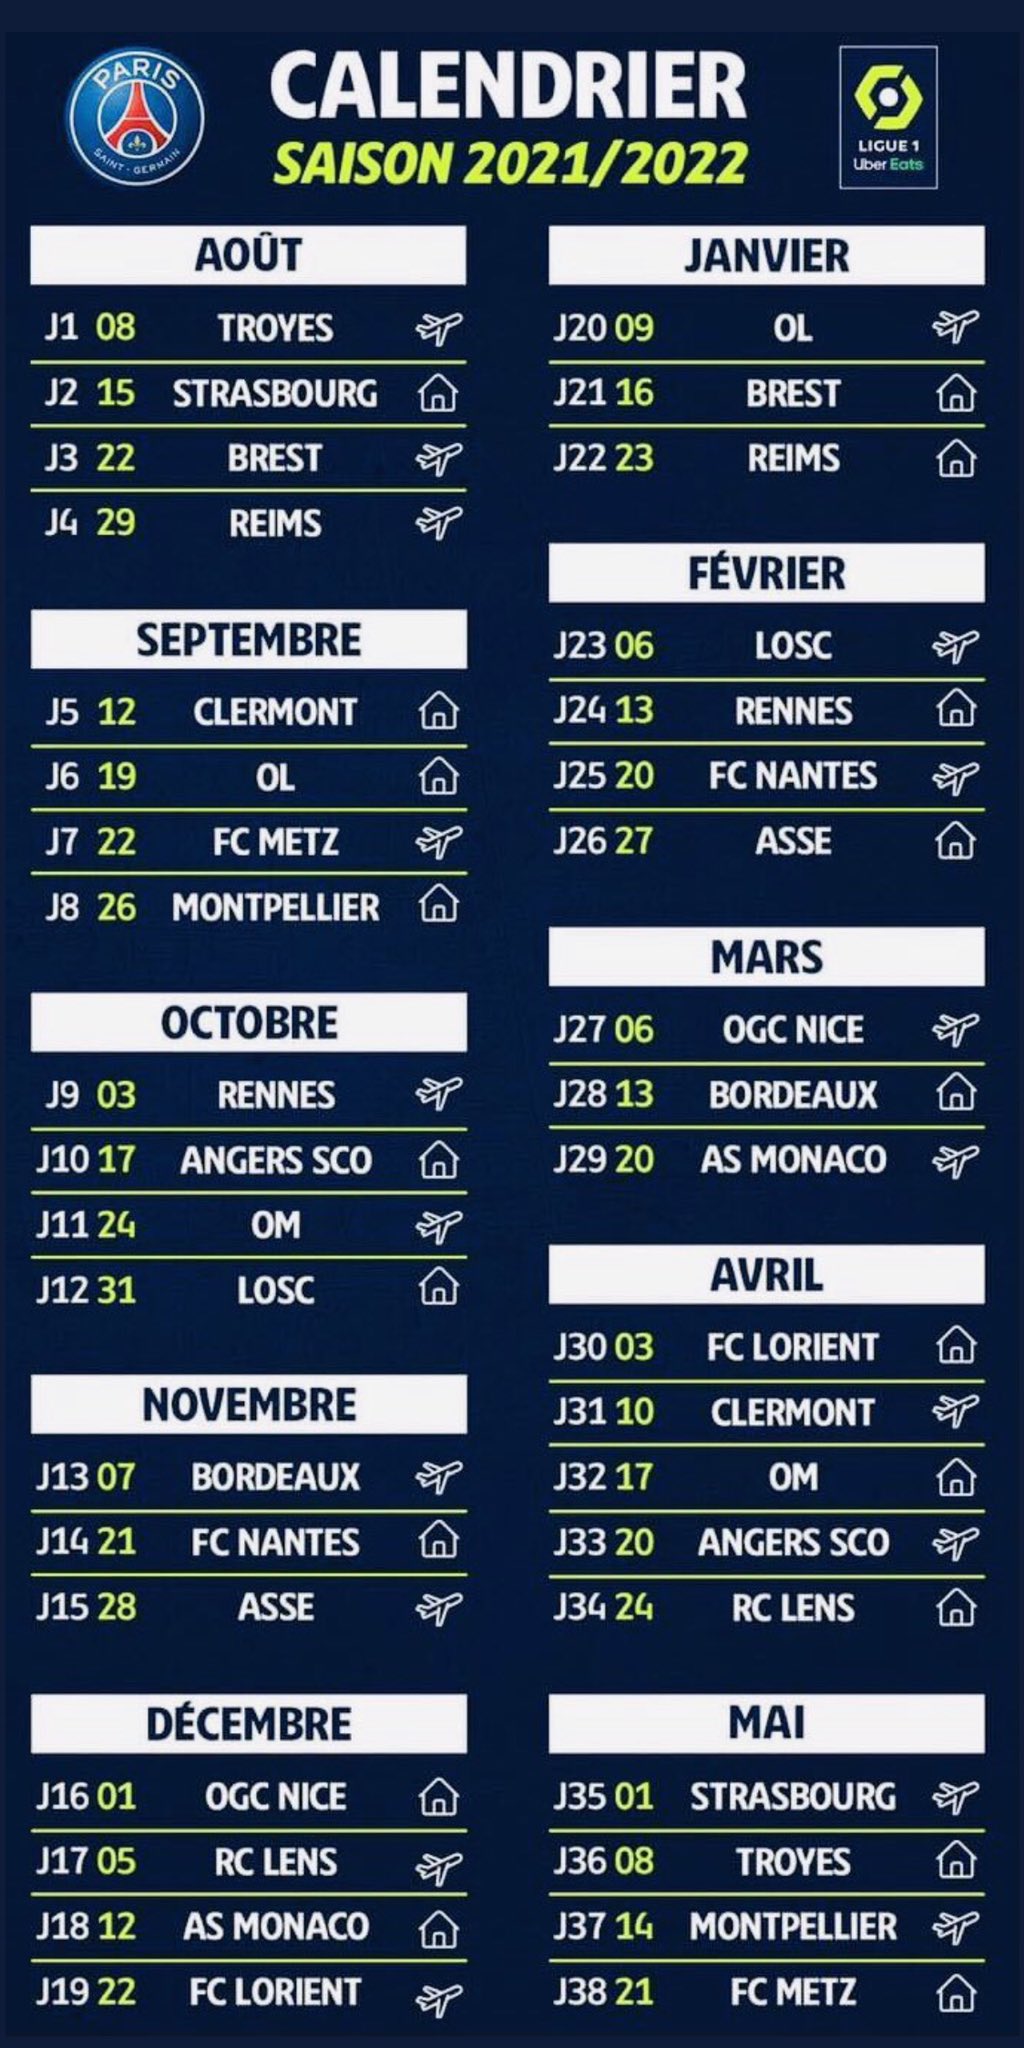 Ligue 1 - Le calendrier dévoilé, retrouvez les dates importantes du PSG pour la saison 2021-2022 